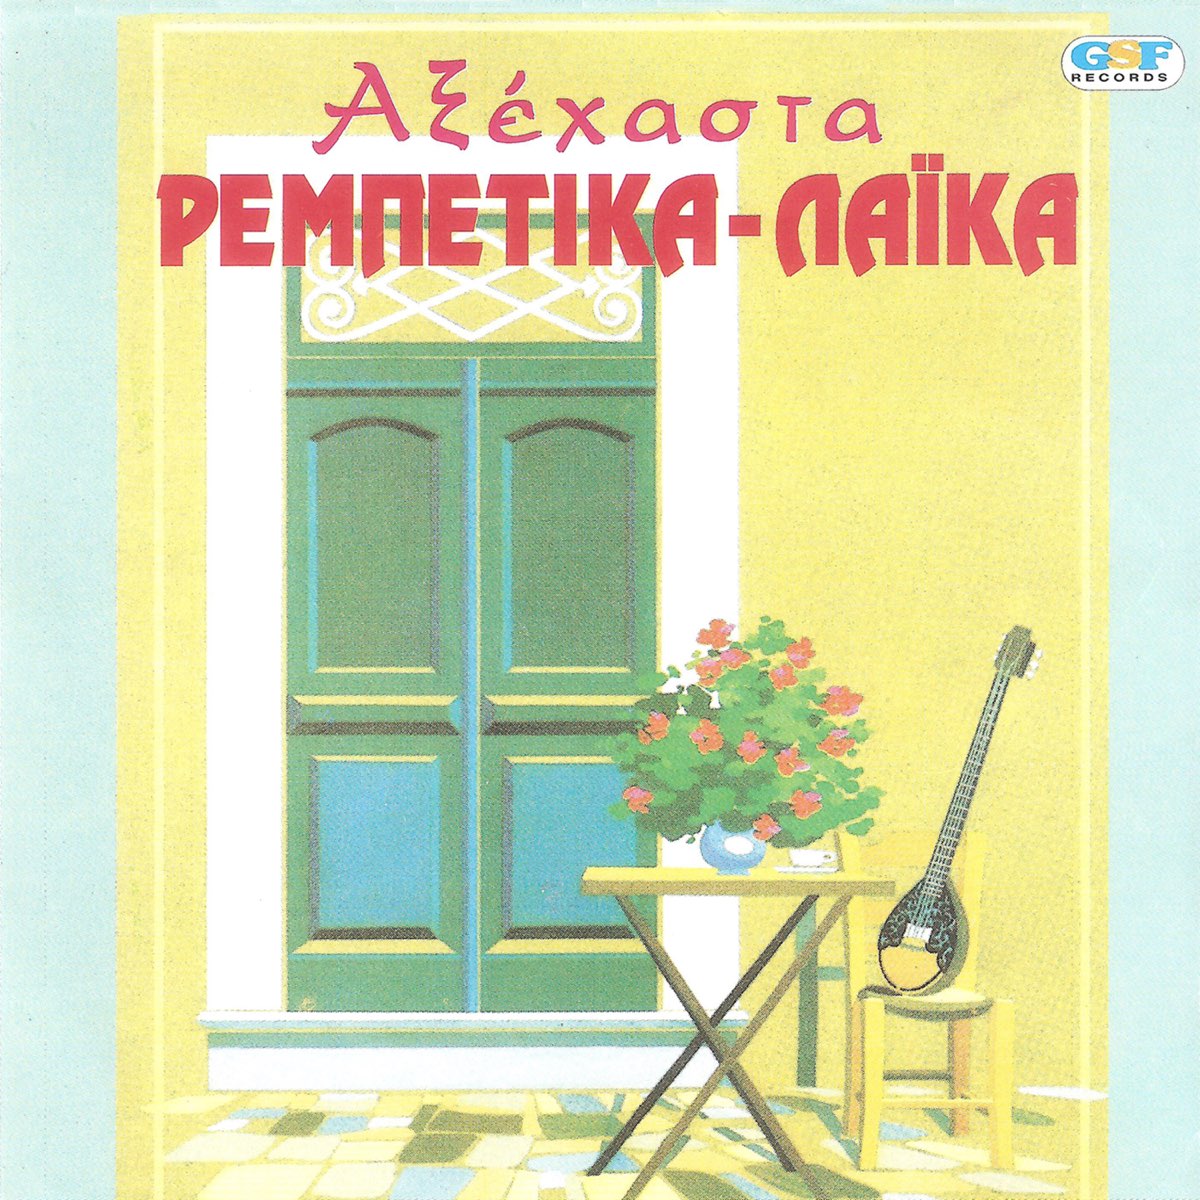 Αξέχαστα Ρεμπέτικα - Λαϊκά - Album by Various Artists - Apple Music